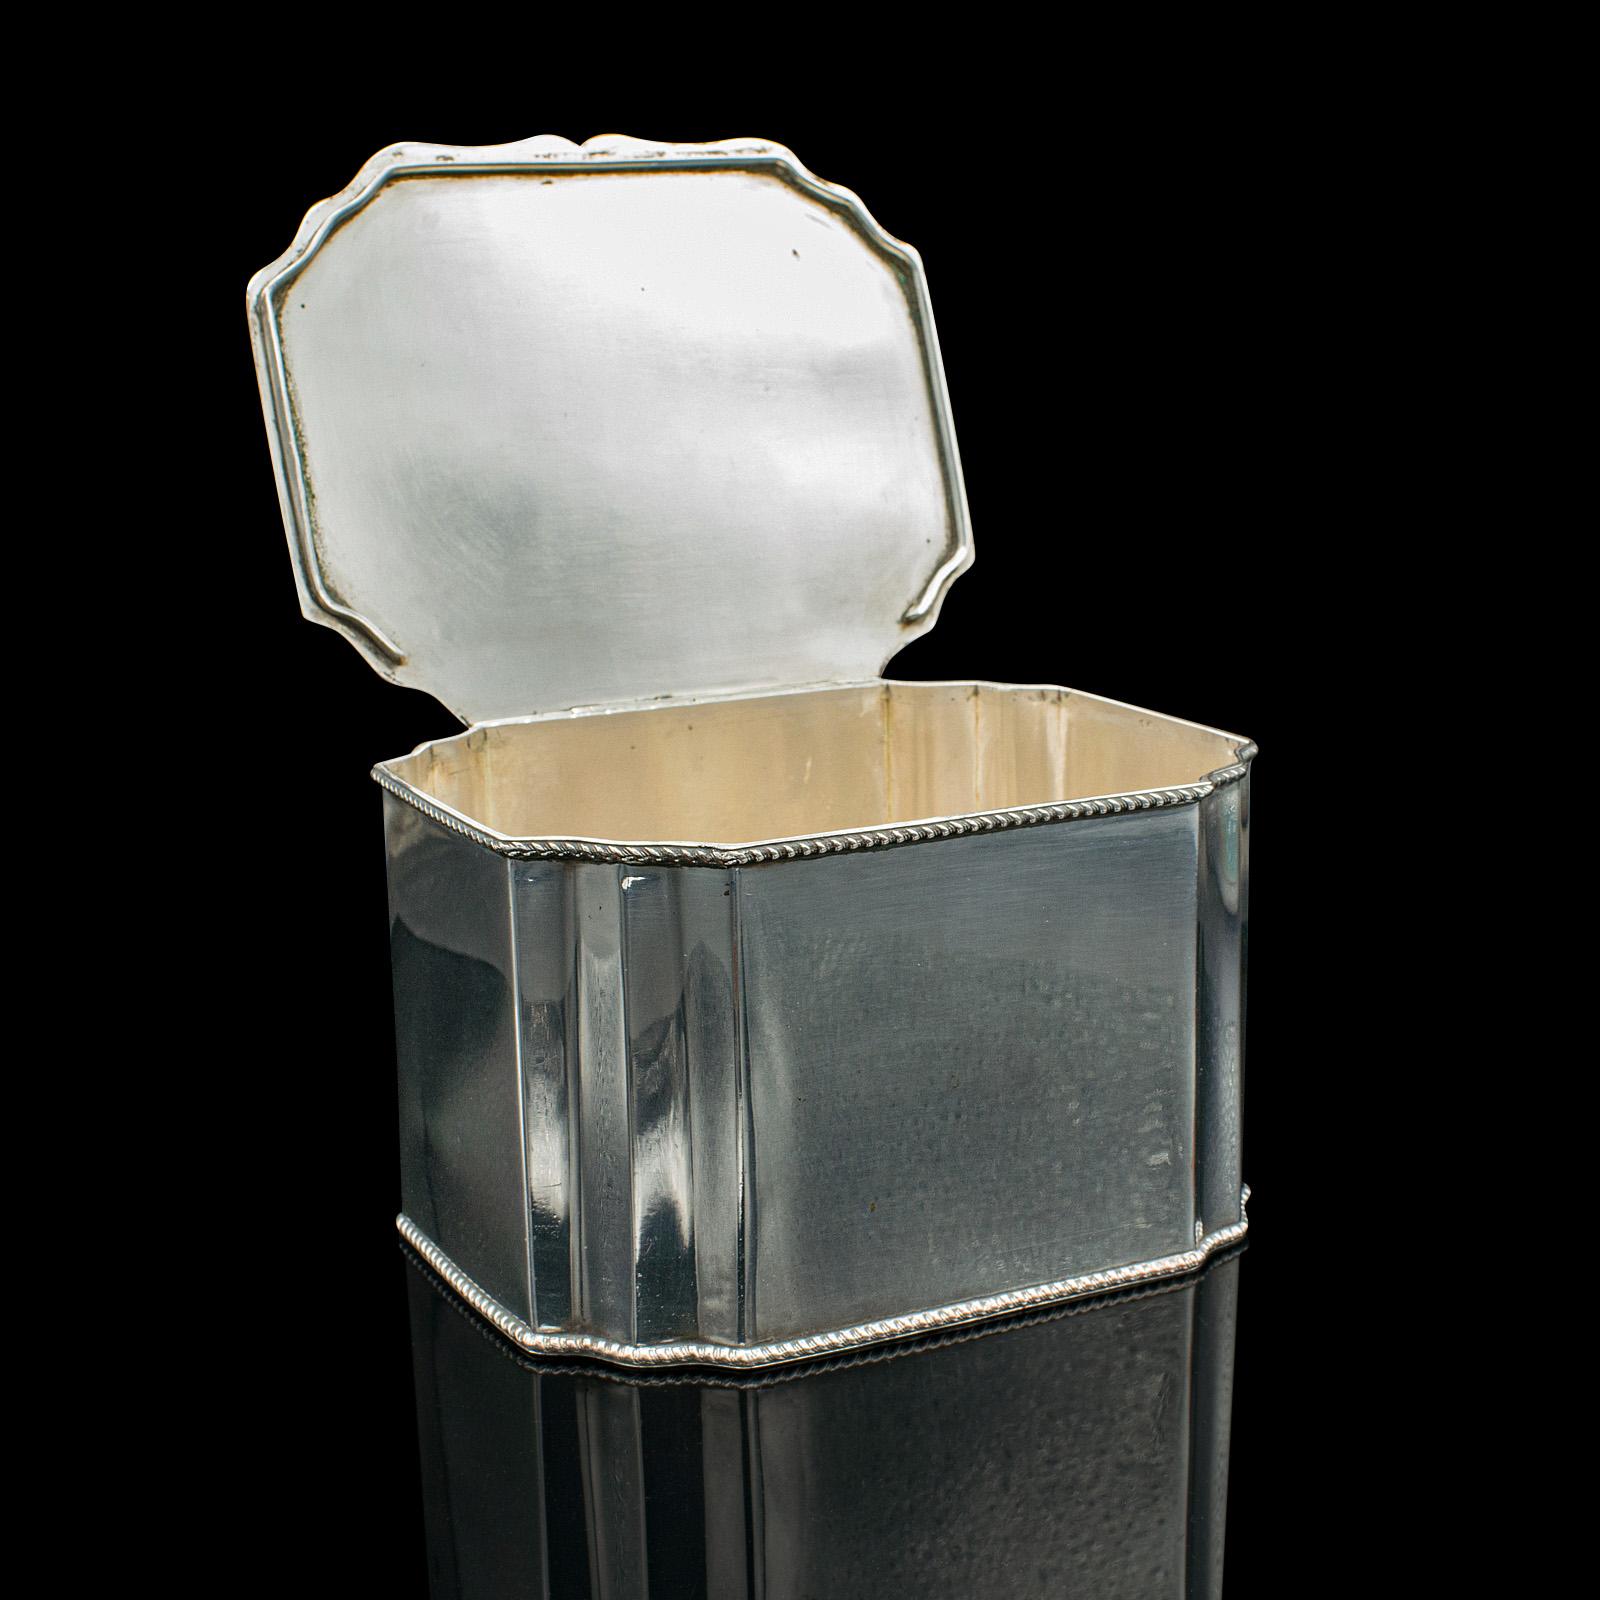 Il s'agit d'une boîte à tiffin ancienne. Une boîte à thé anglaise en métal argenté, datant de la période édouardienne, vers 1910.

Boîte ou caddy édouardien attrayant d'aspect brillant
Présente une patine d'usage désirable et est en bon état.
Le